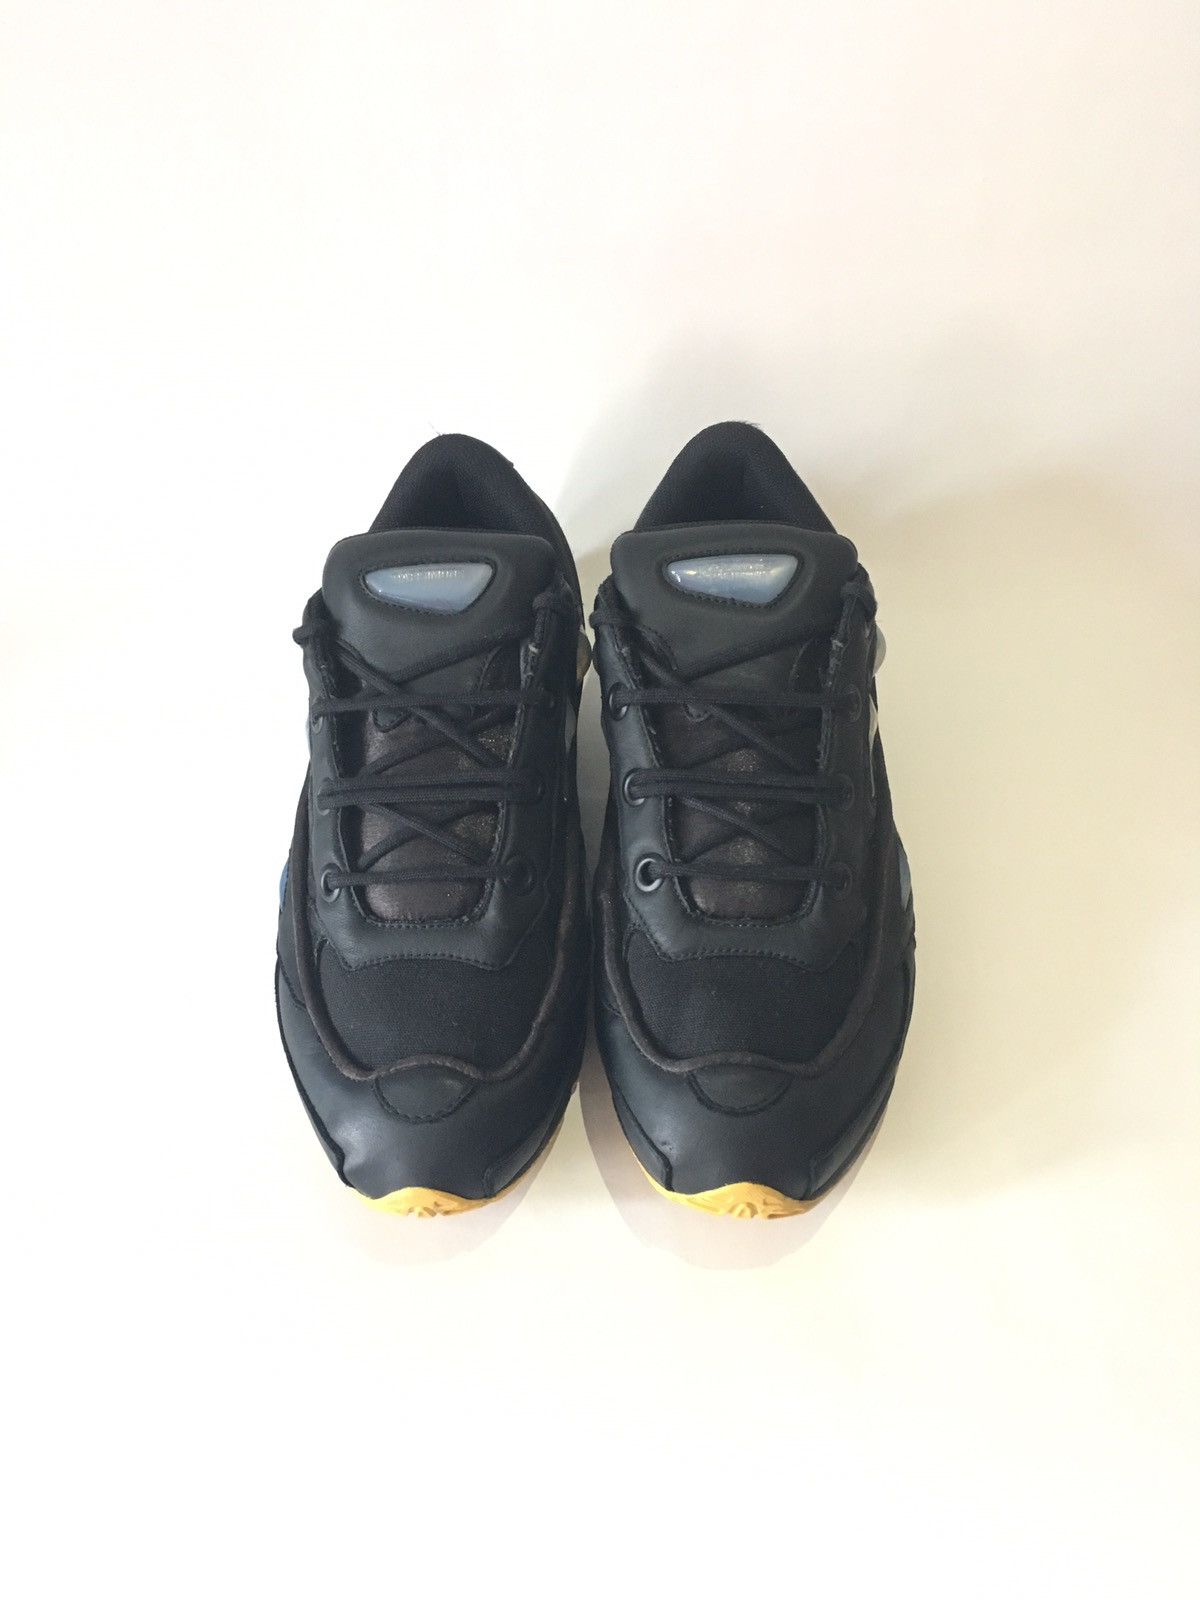 Adidas Raf Simons Ozweego Black Corn 10.5 Kanye Size US 10.5 / EU 43-44 - 1 Preview